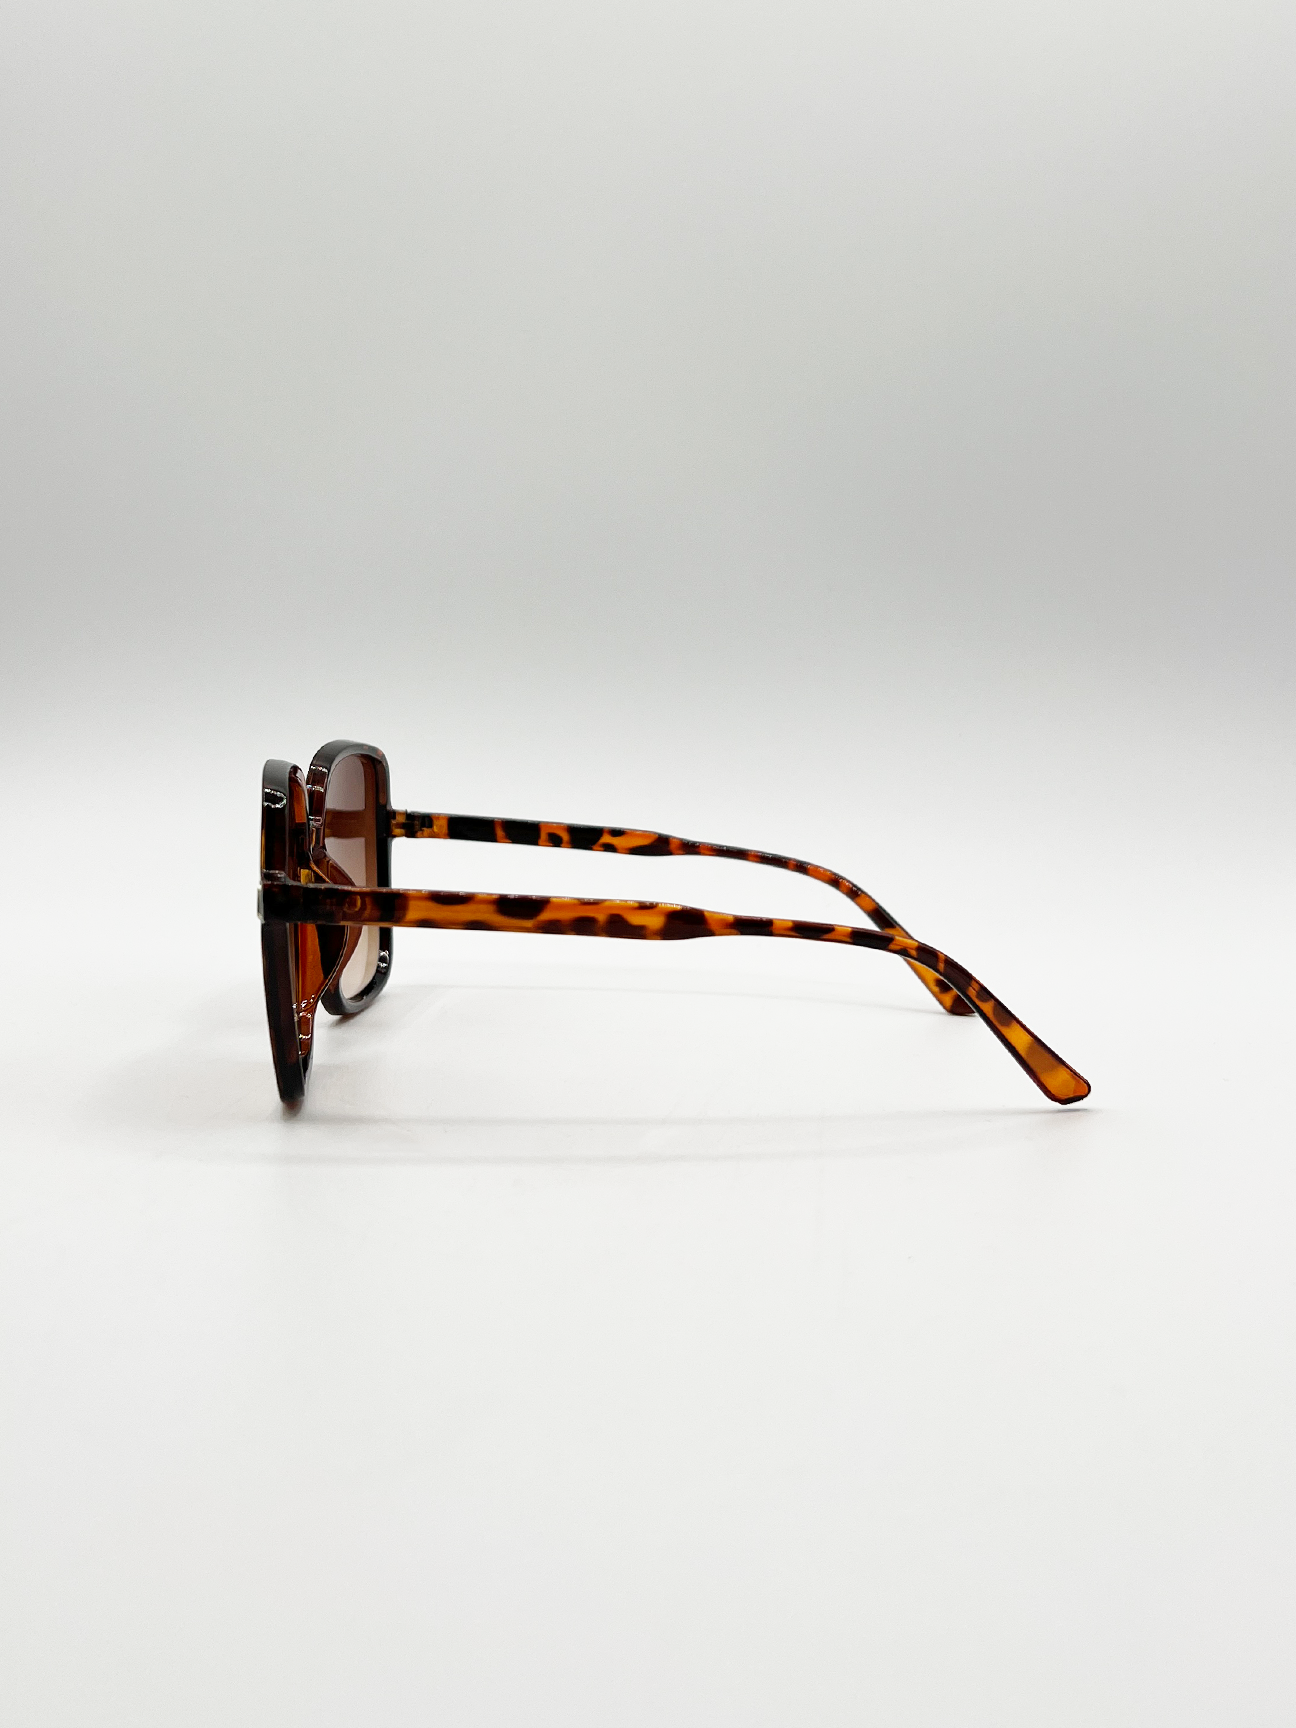 Oversized Lightweight Square Frame Sunglasses in Tortoiseshell